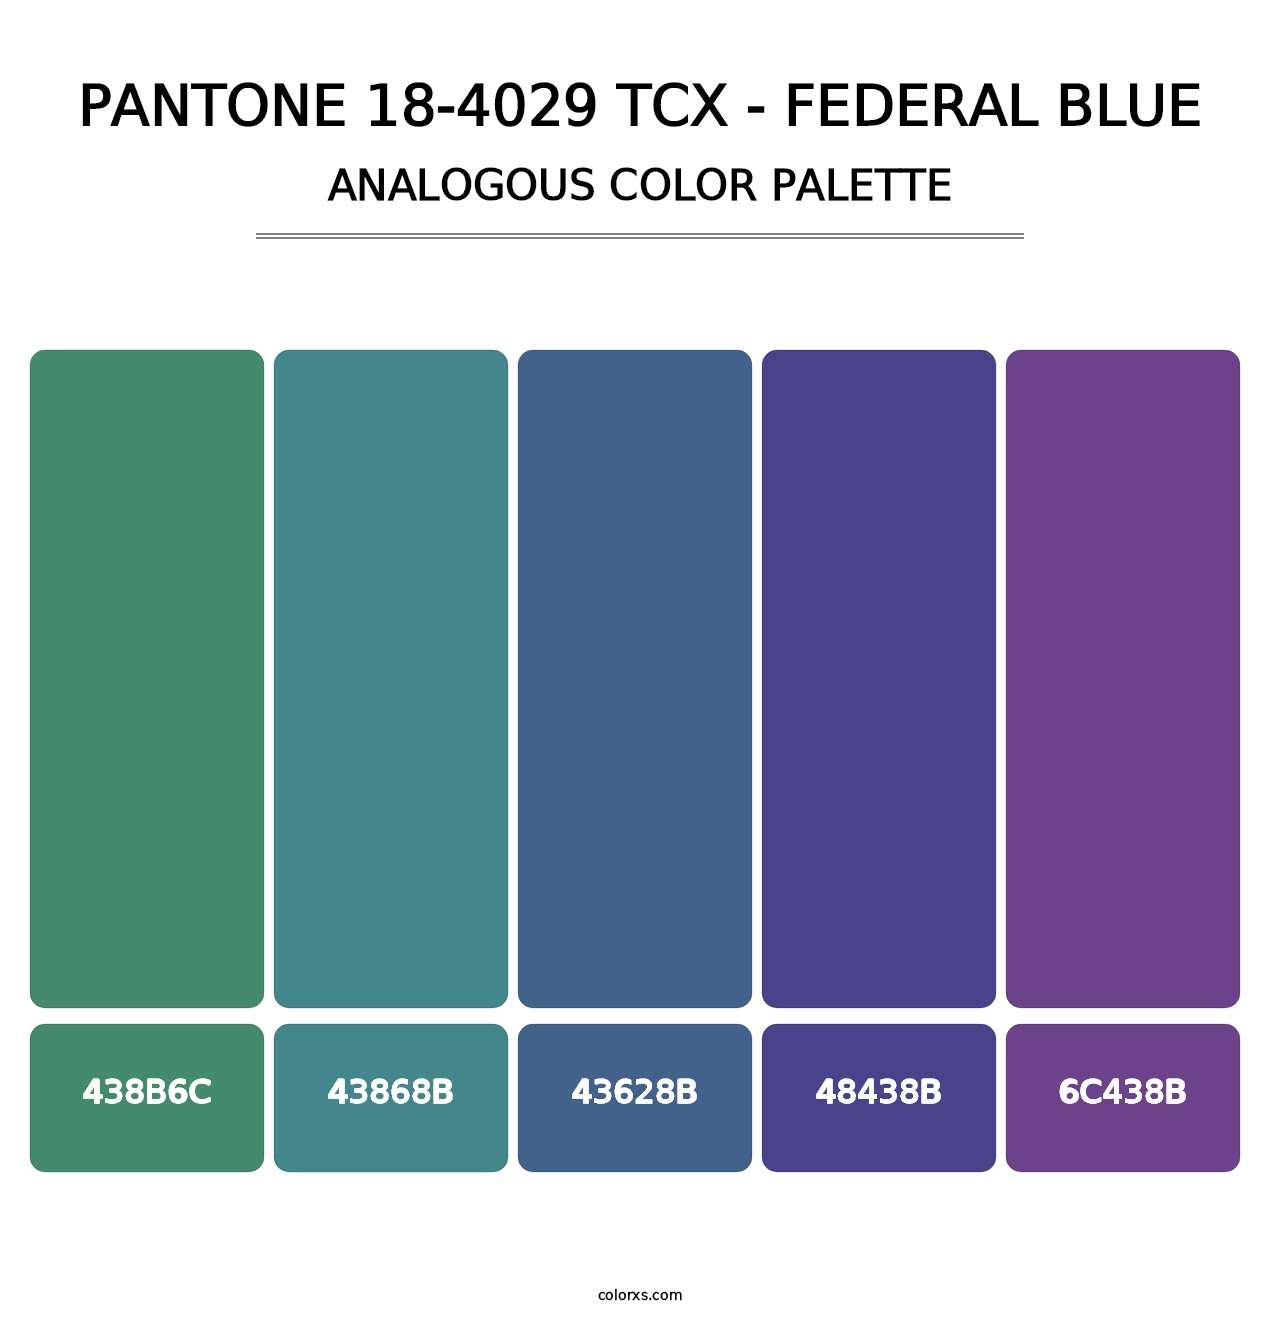 PANTONE 18-4029 TCX - Federal Blue - Analogous Color Palette